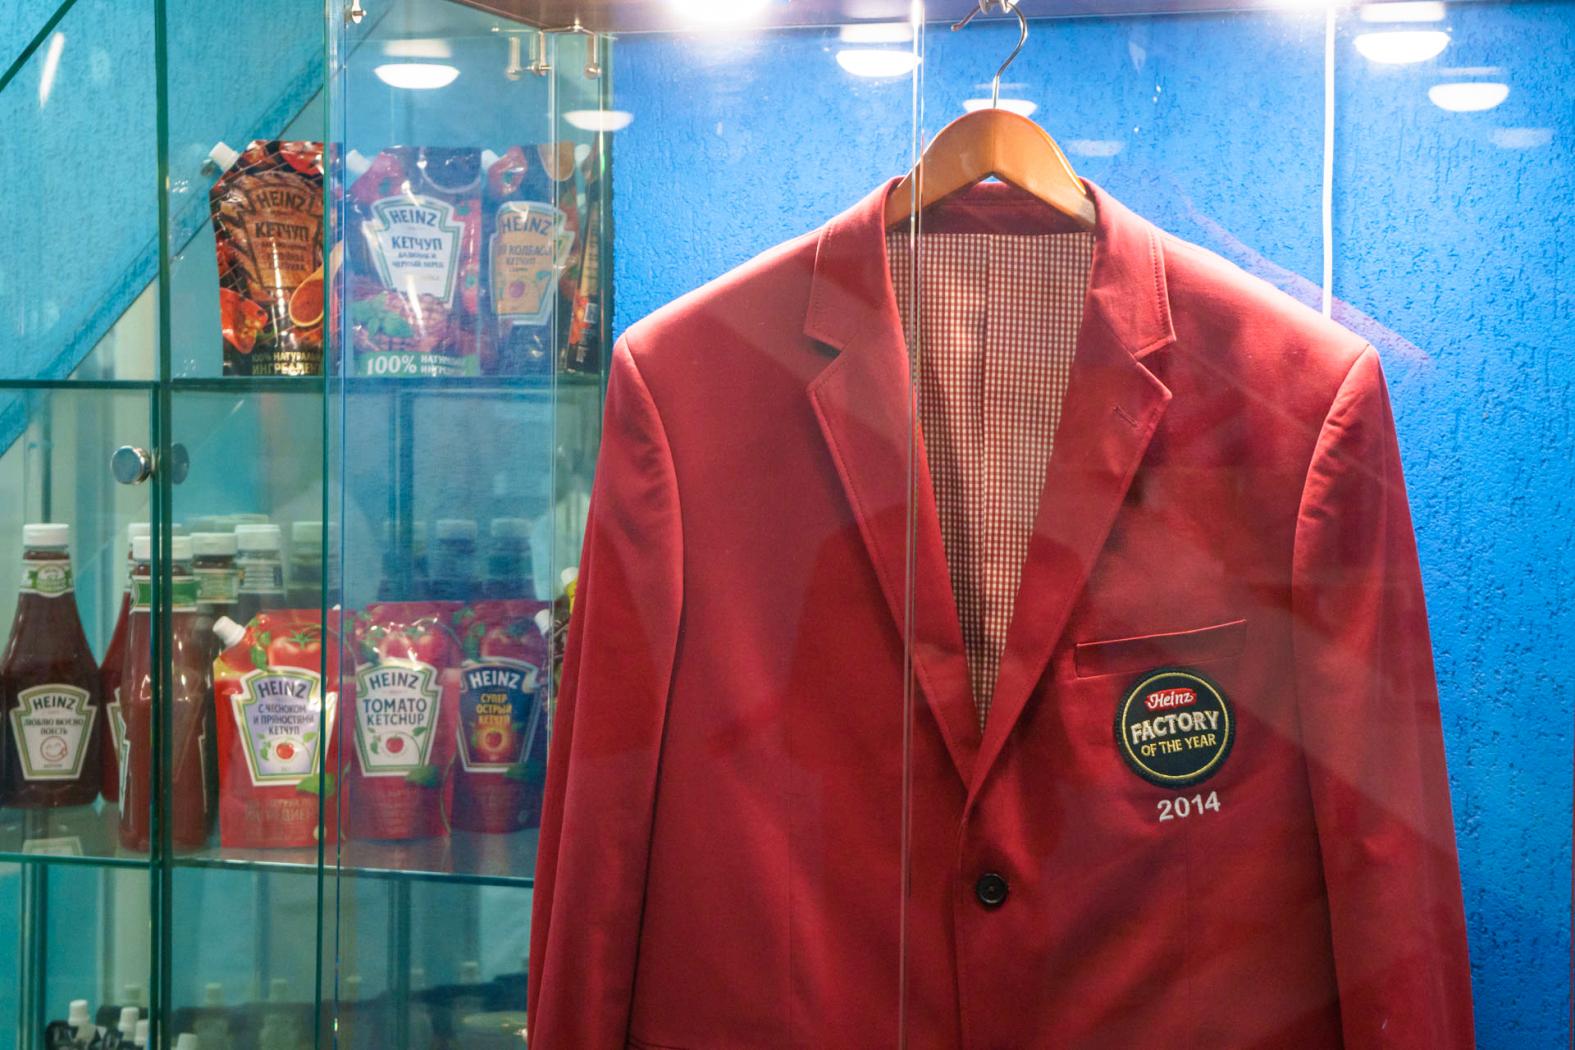 В 2014 году завод в Отрадном был признан лучшим среди всех заводов Heinz в мире. В фойе завода с тех пор висит символ этой победы – знаменитый красный пиджак.